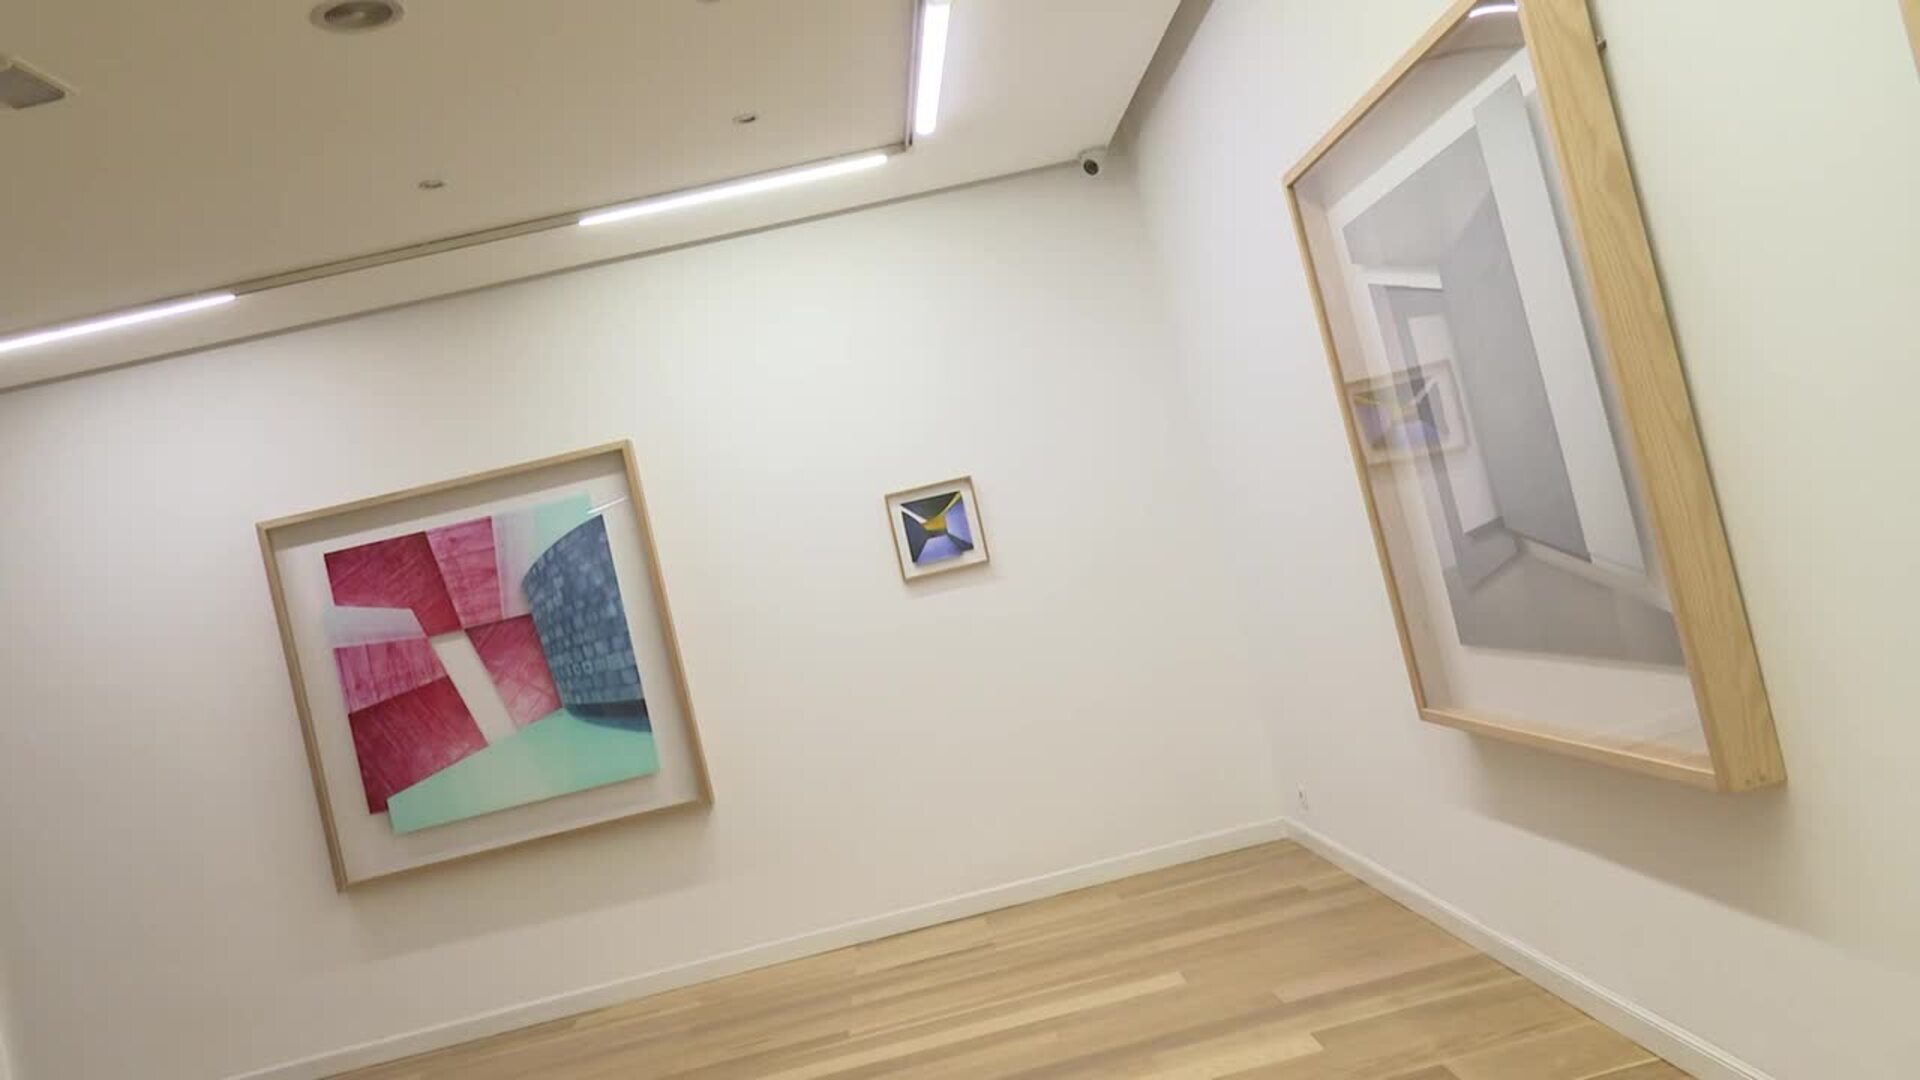 Galería acoge la exposición "Gravitación visual", del bilbaíno Patrick Gribalbo